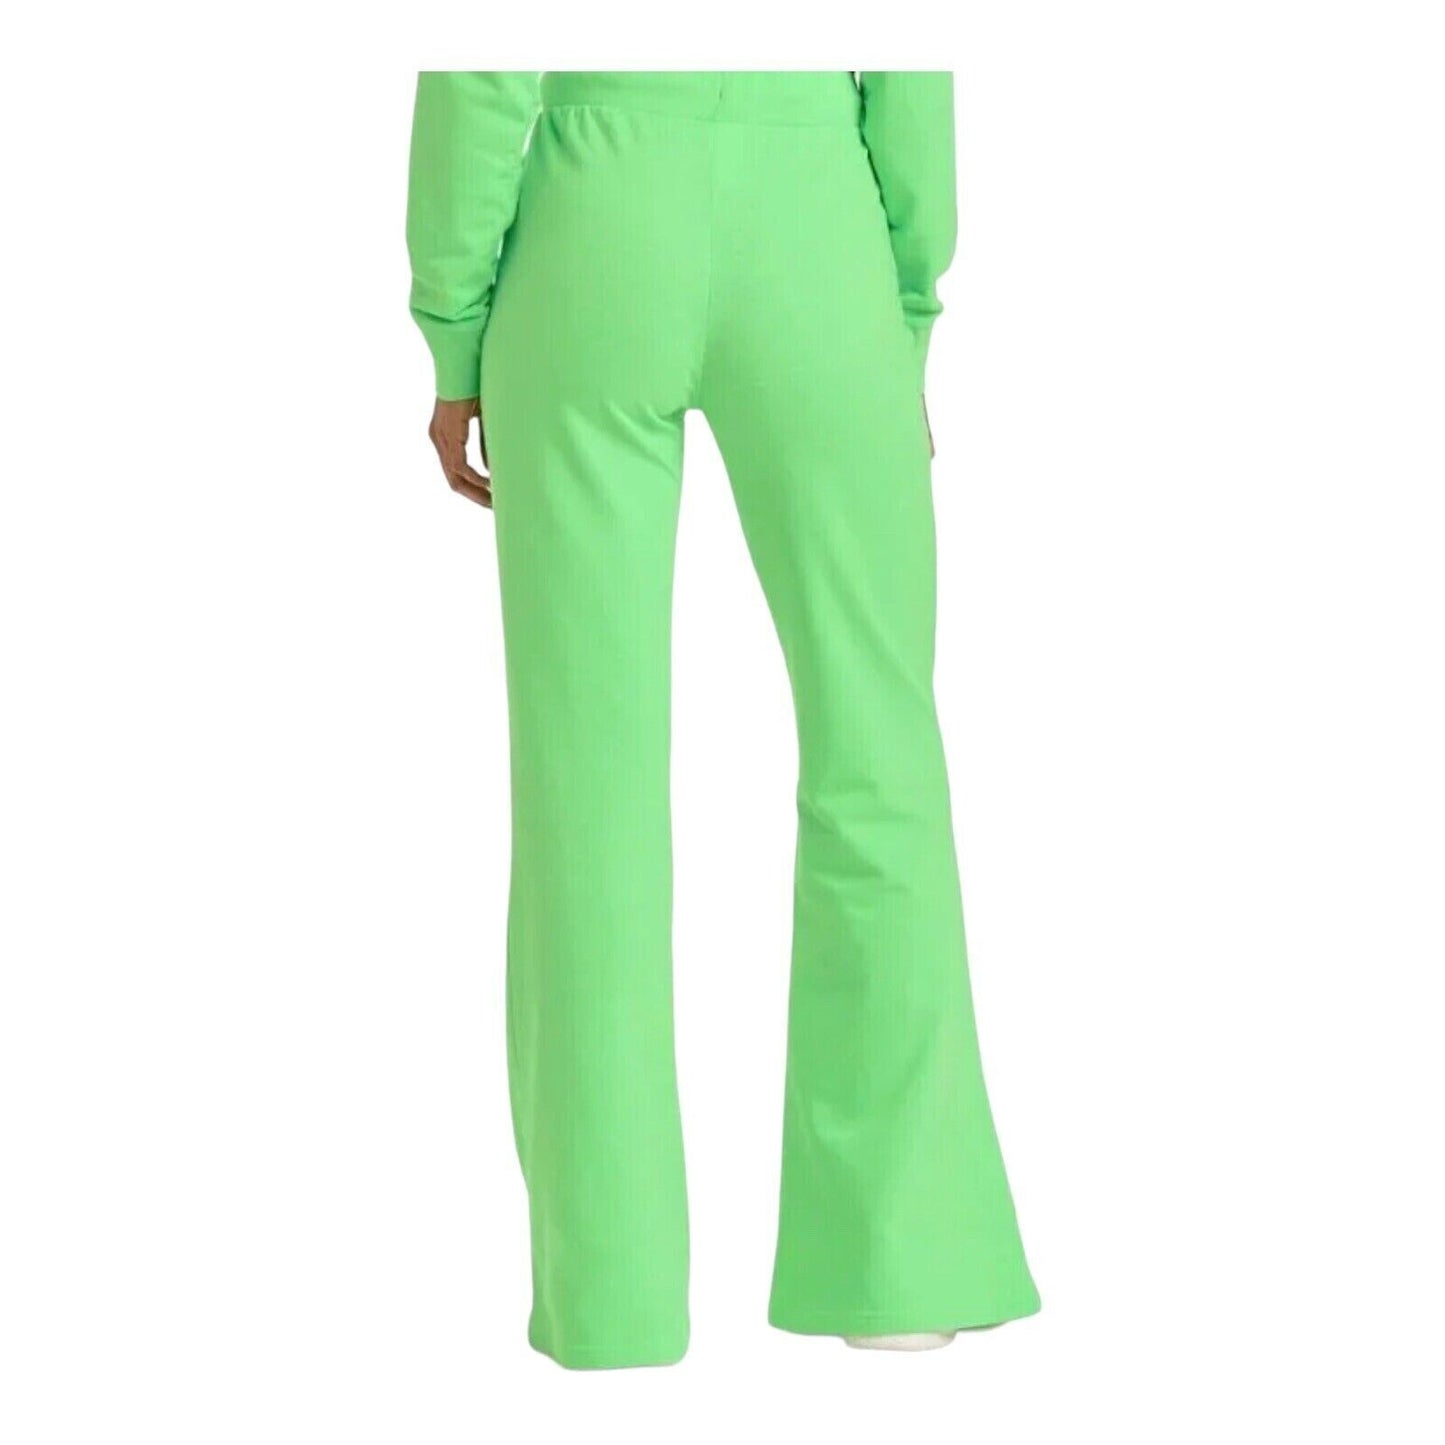 Women's St. Patrick's Day Baby Yoda Wide Leg Graphic Pants Green XL